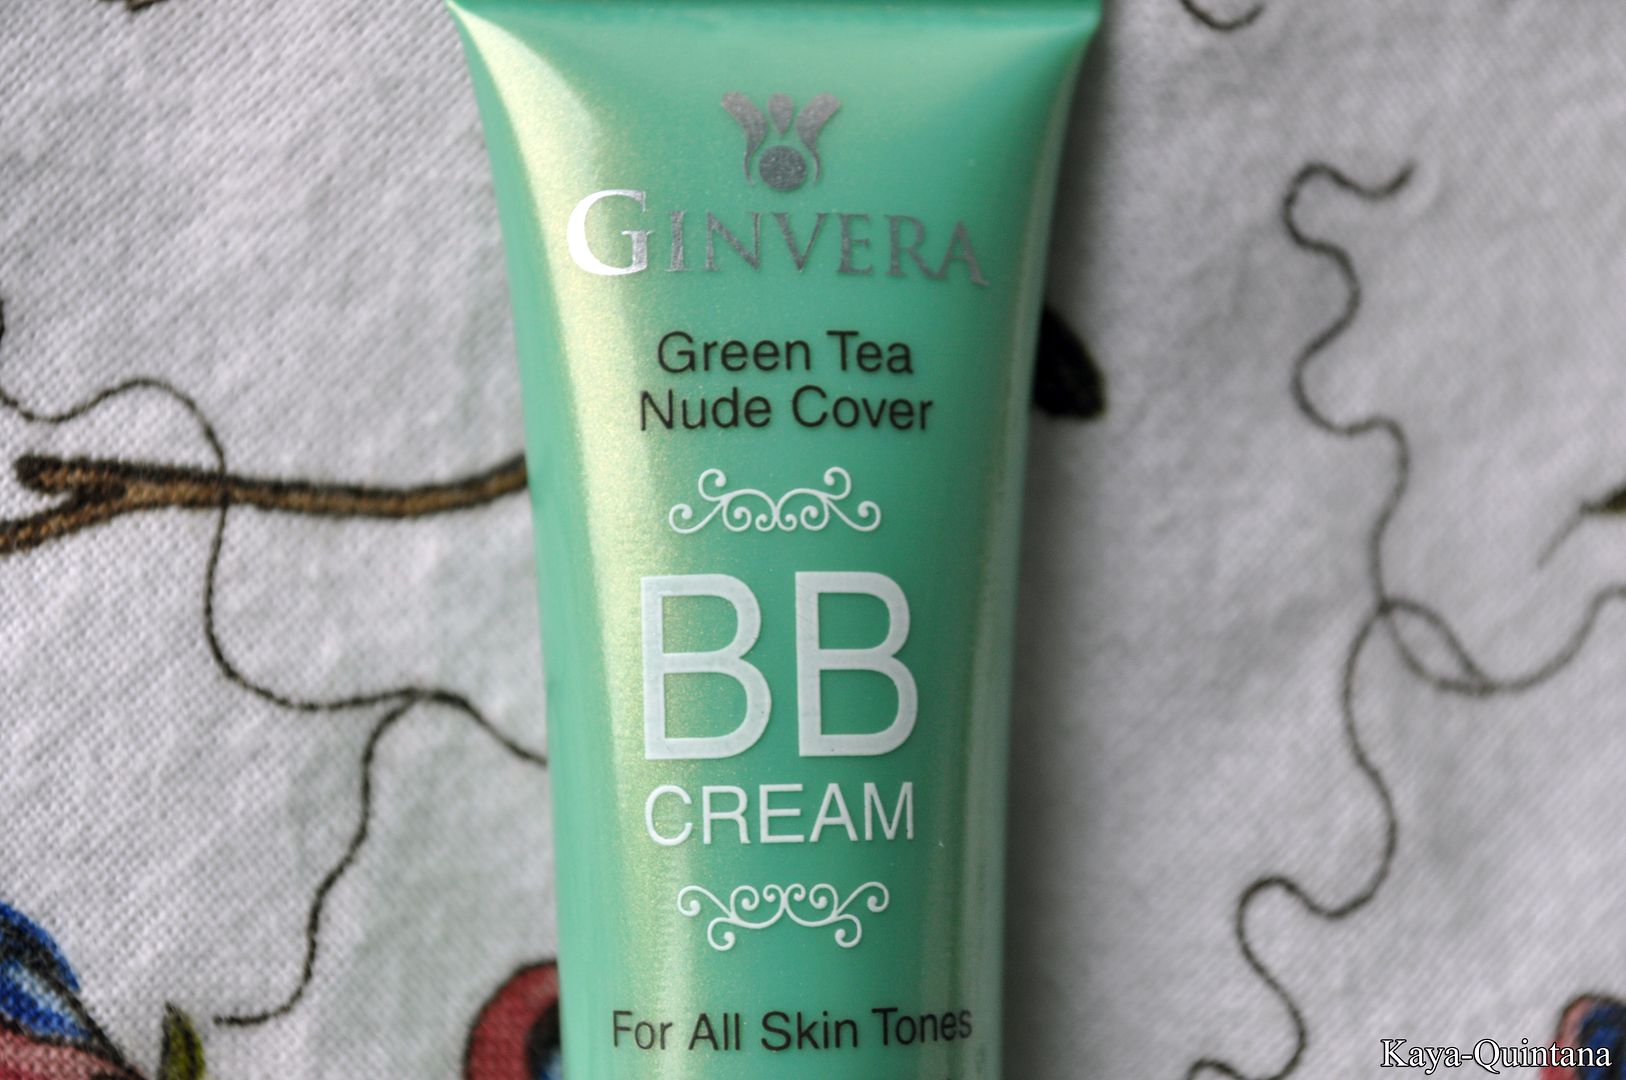 ginvera green tea nude cover bb cream